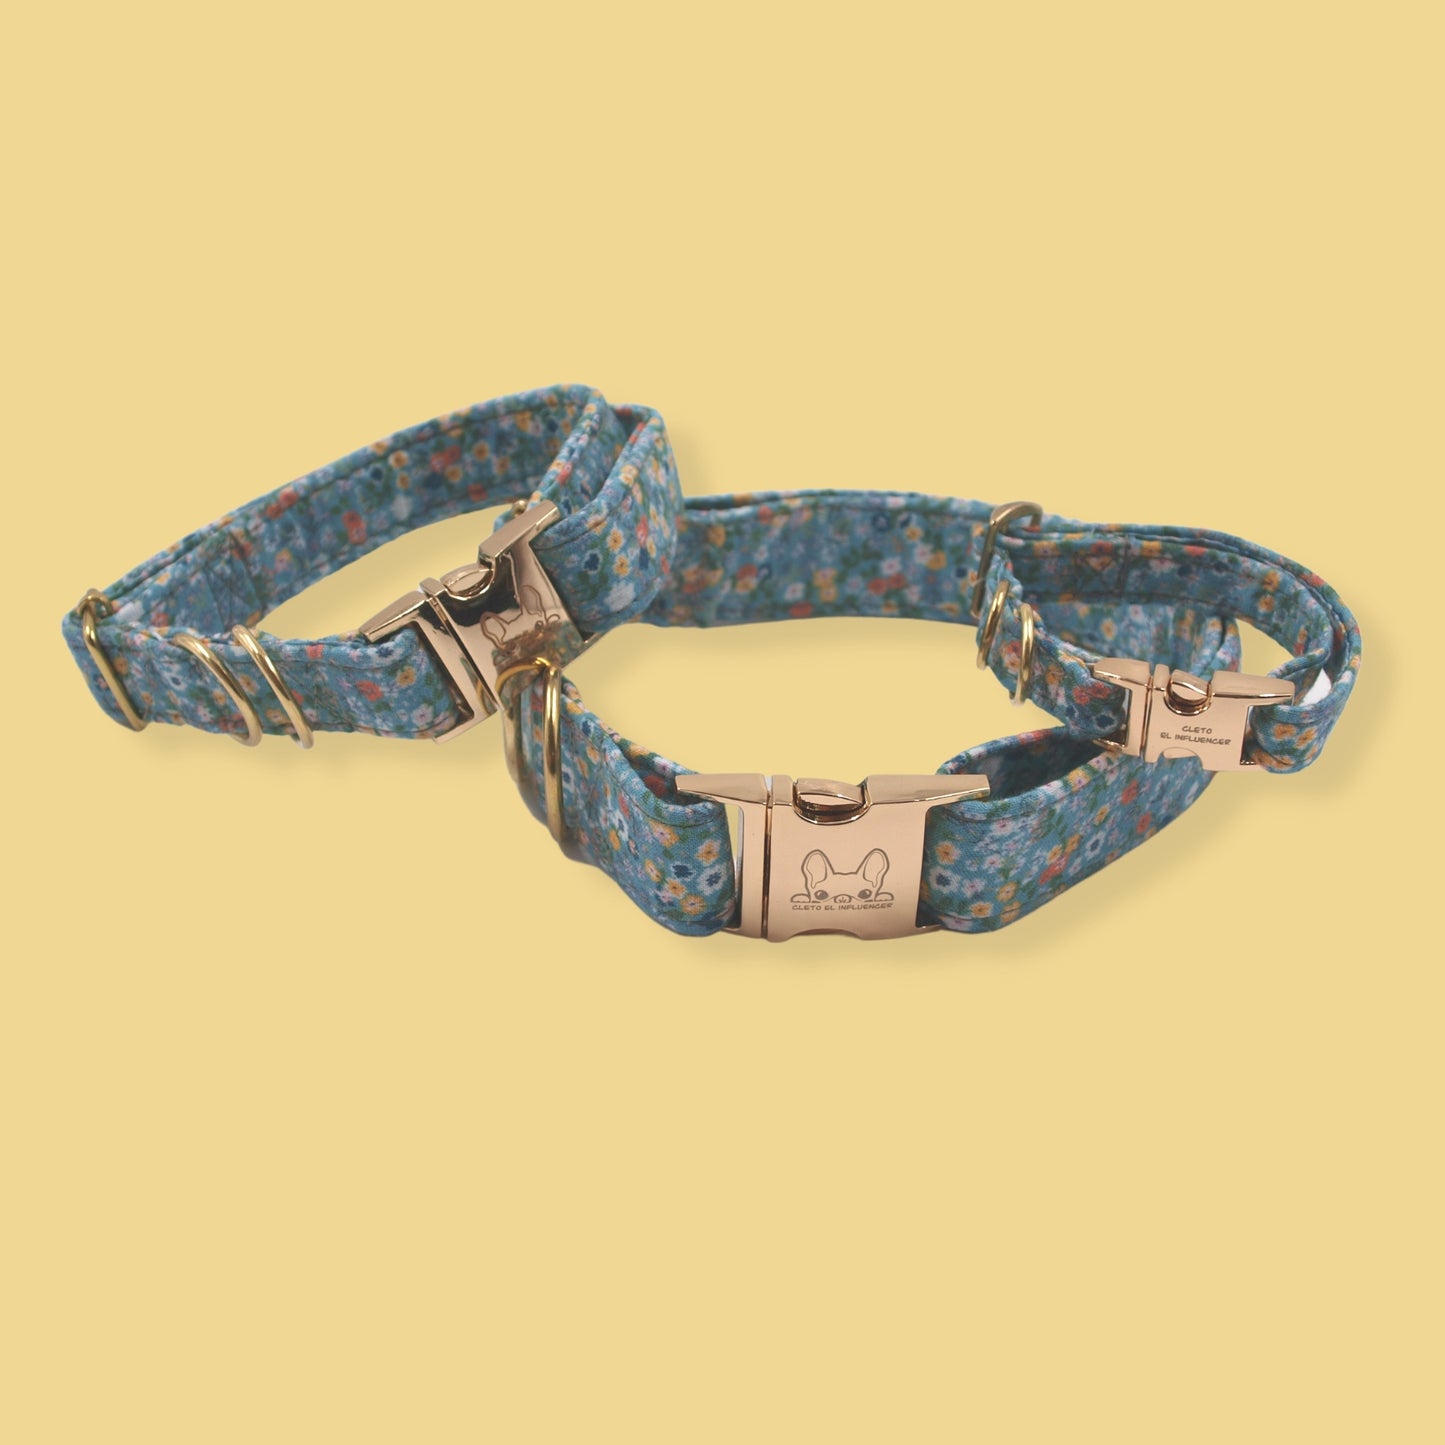 Collares para mascota con herrajes dorados, el collar es color azul con flores.